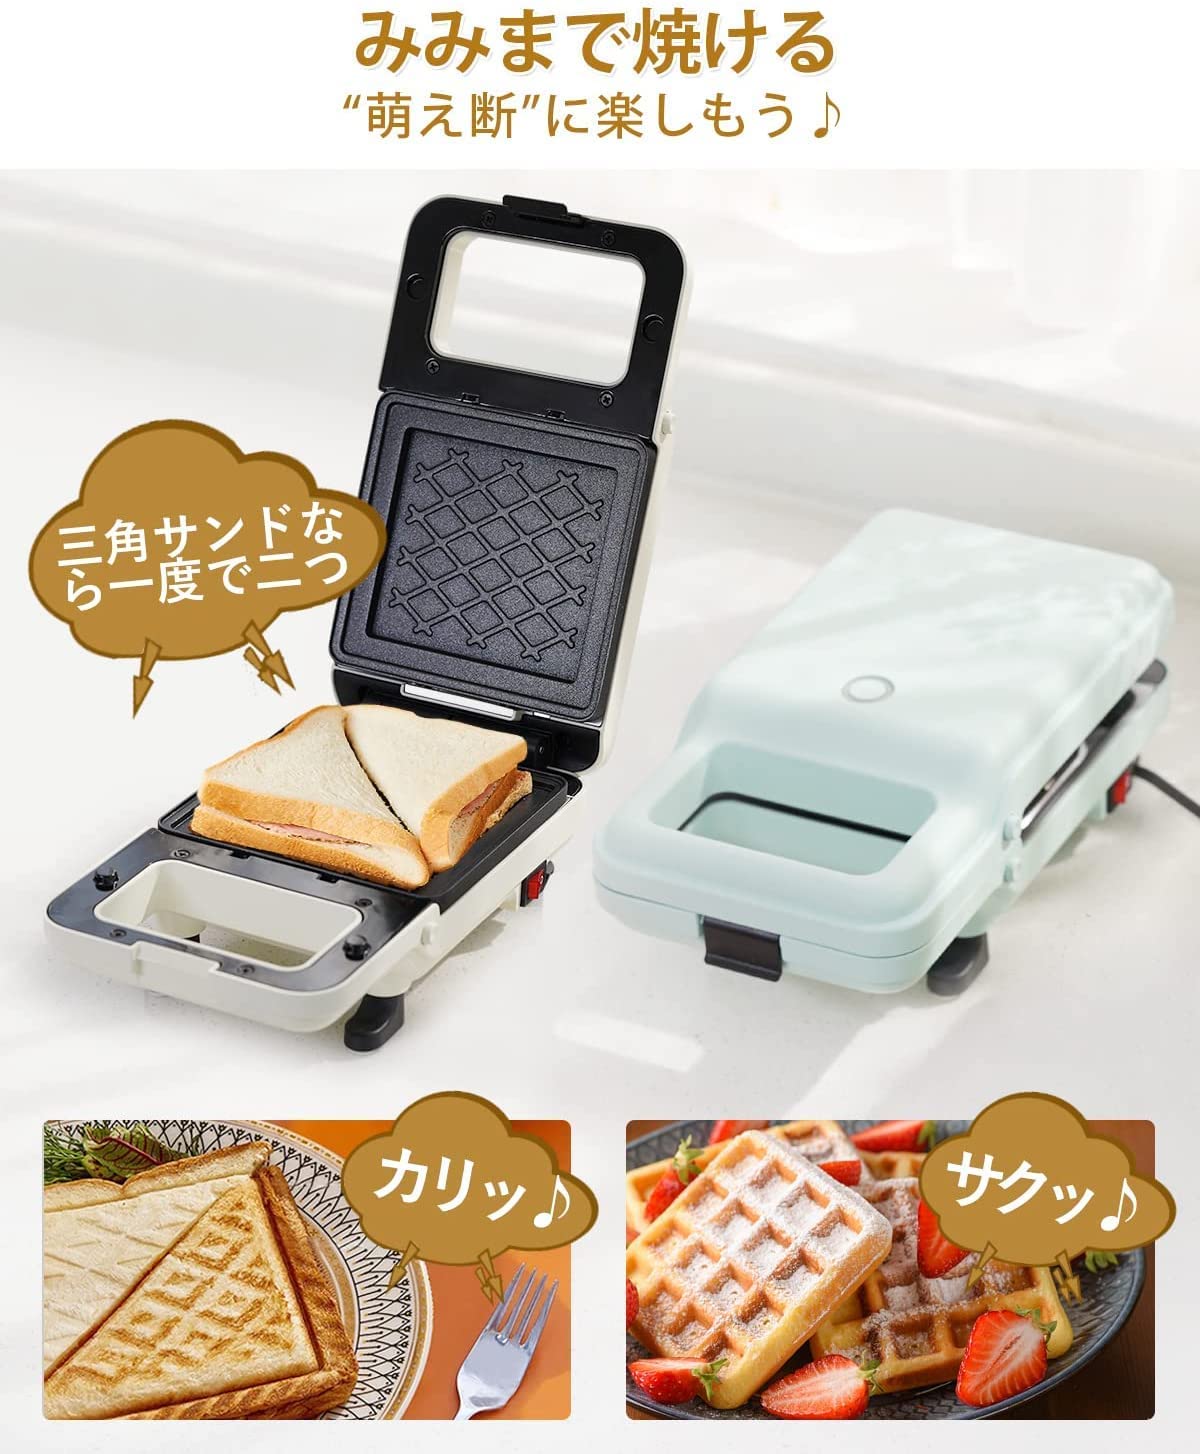 日本公司貨 SOLEMOOD 熱壓吐司機 三明治機 鬆餅機 (附兩種烤盤) 參考 TOFFY K-HS2 搬家賀禮